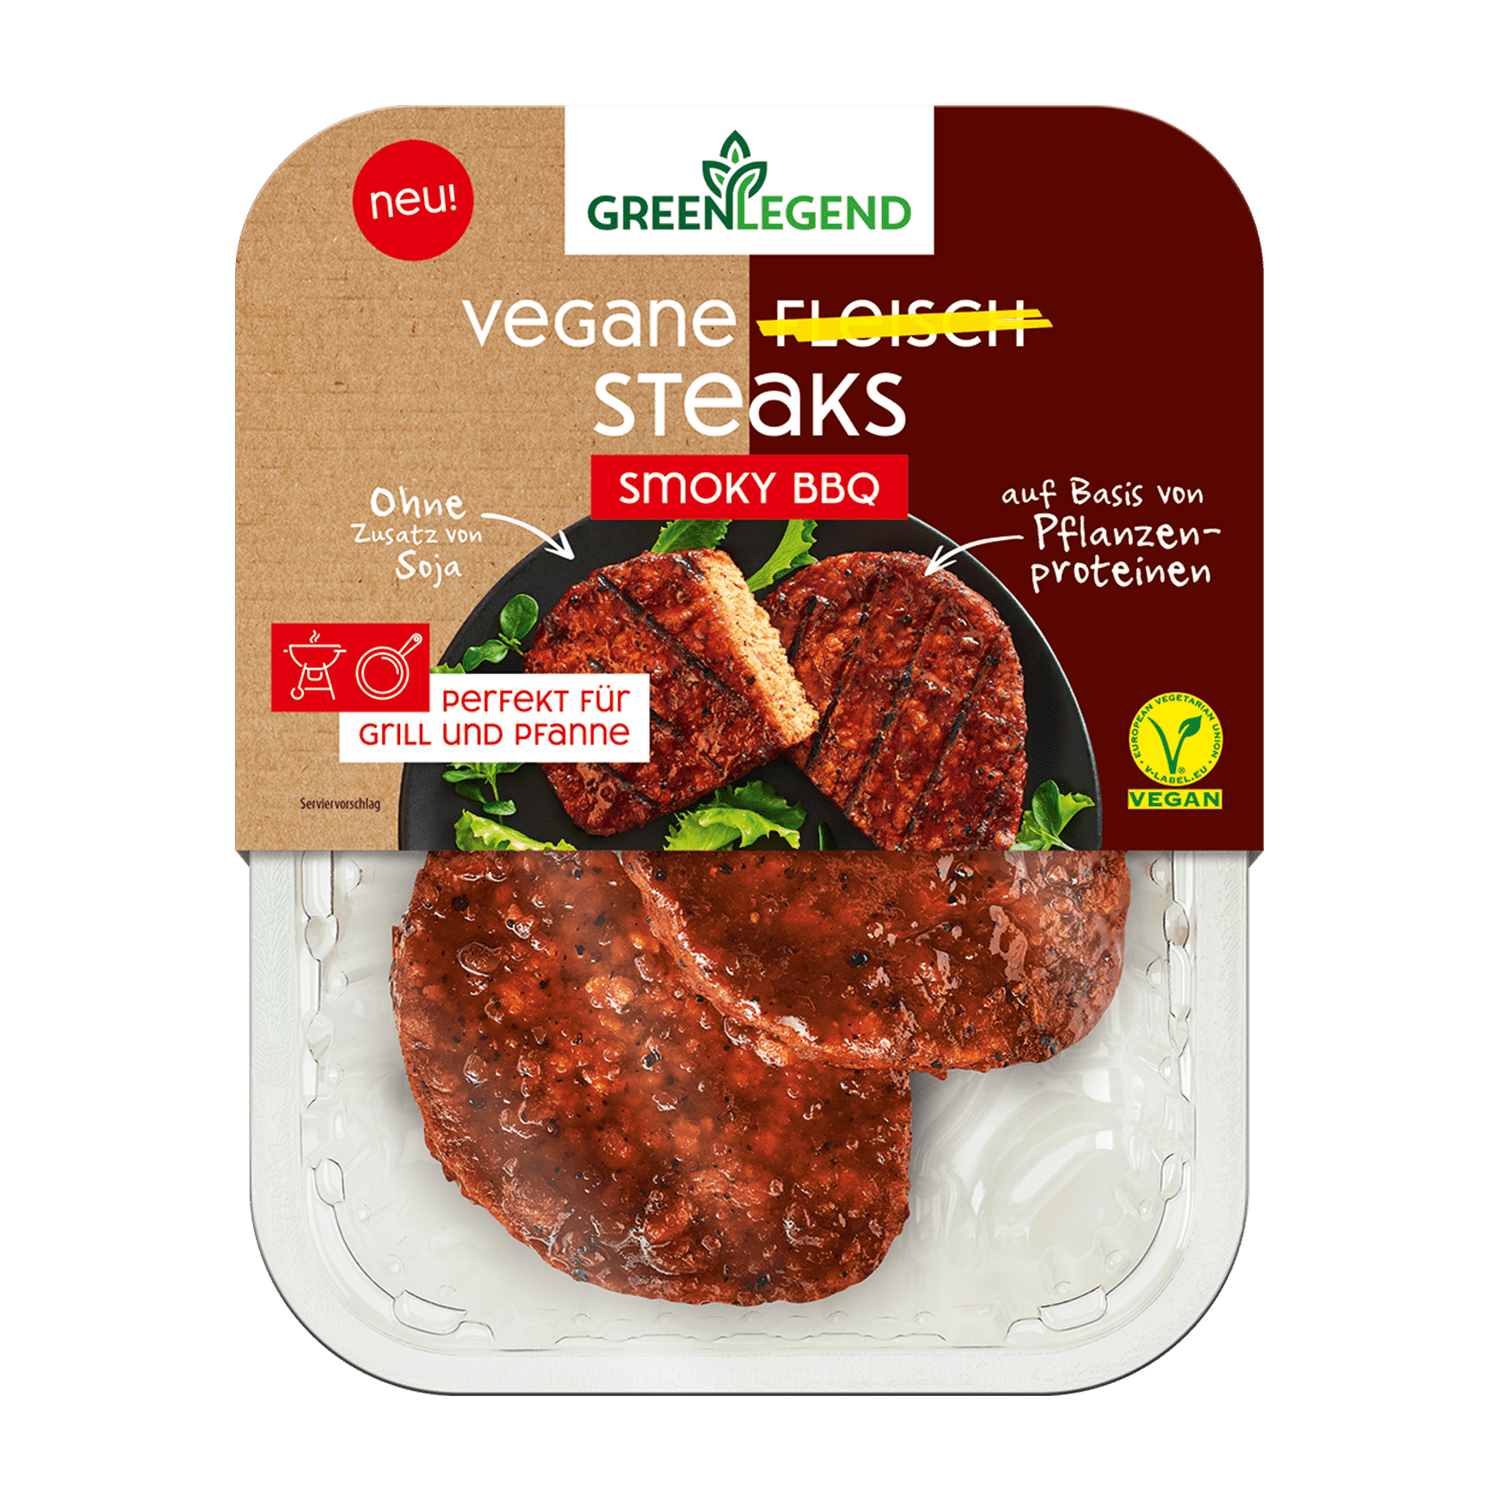 Vegane Fleisch Steaks Smoky Bbq, 160g